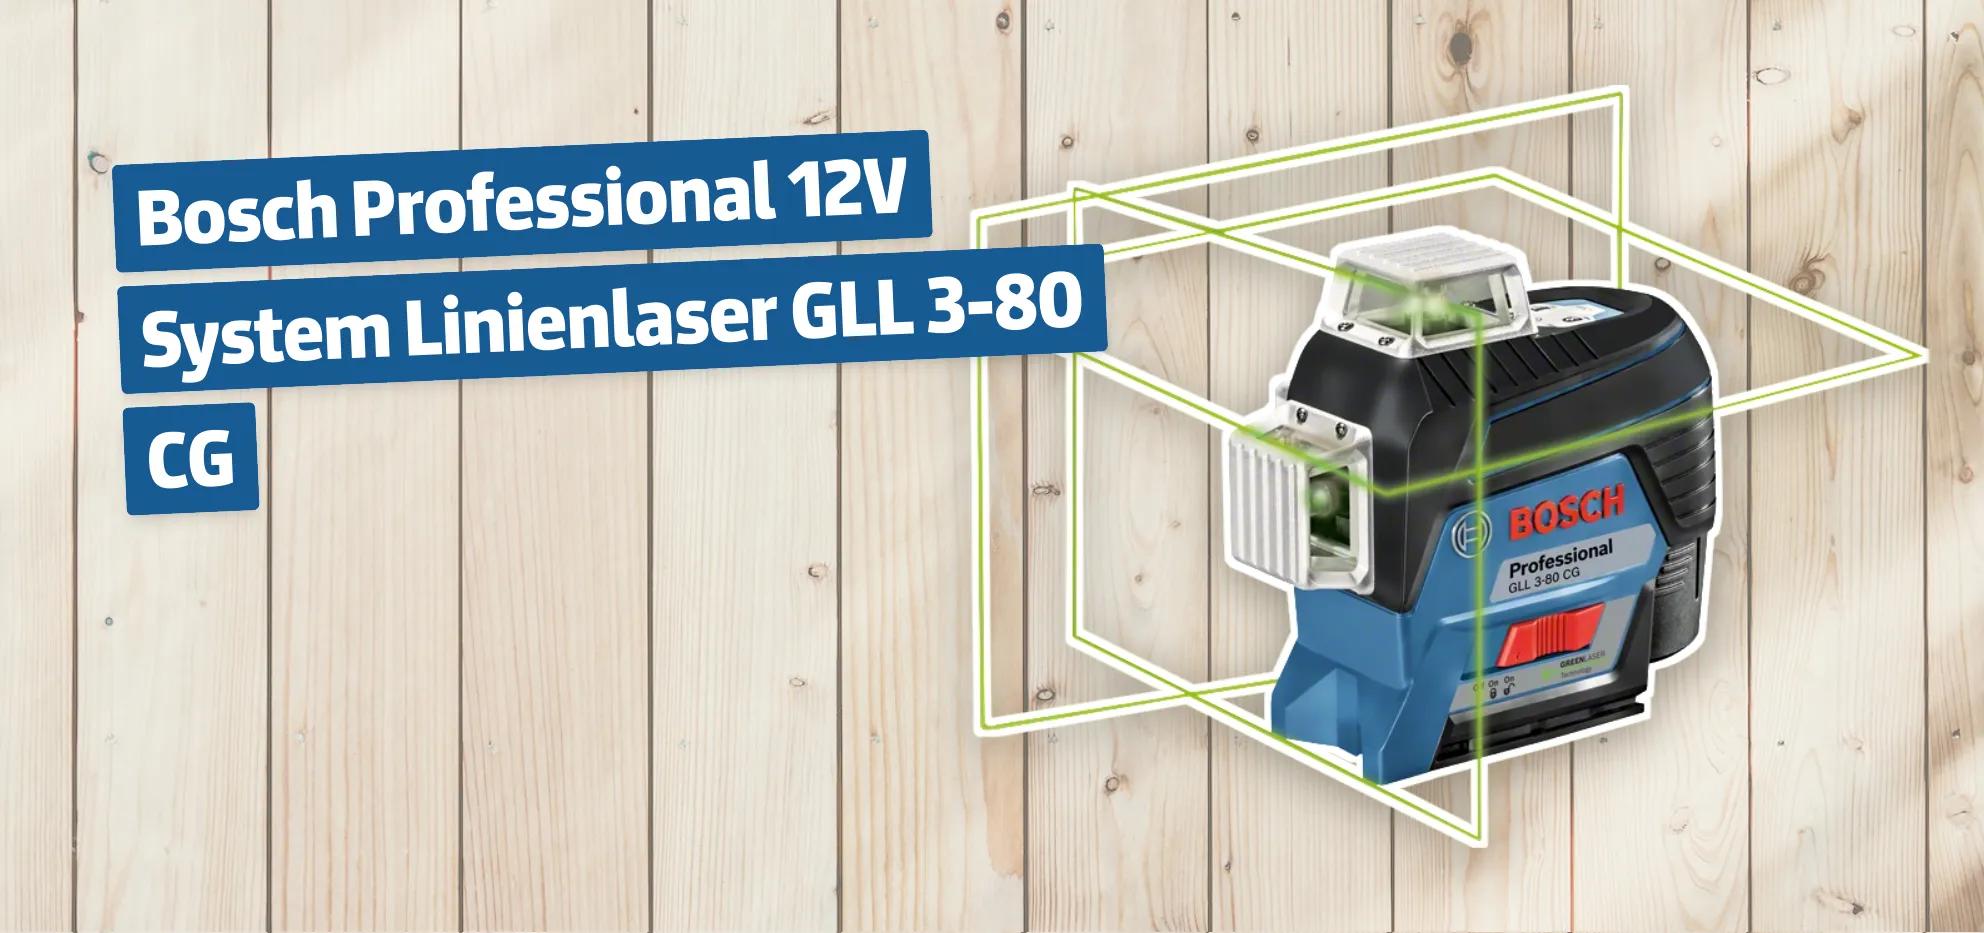 Bosch Professional 12V System Linienlaser GLL 3-80 CG